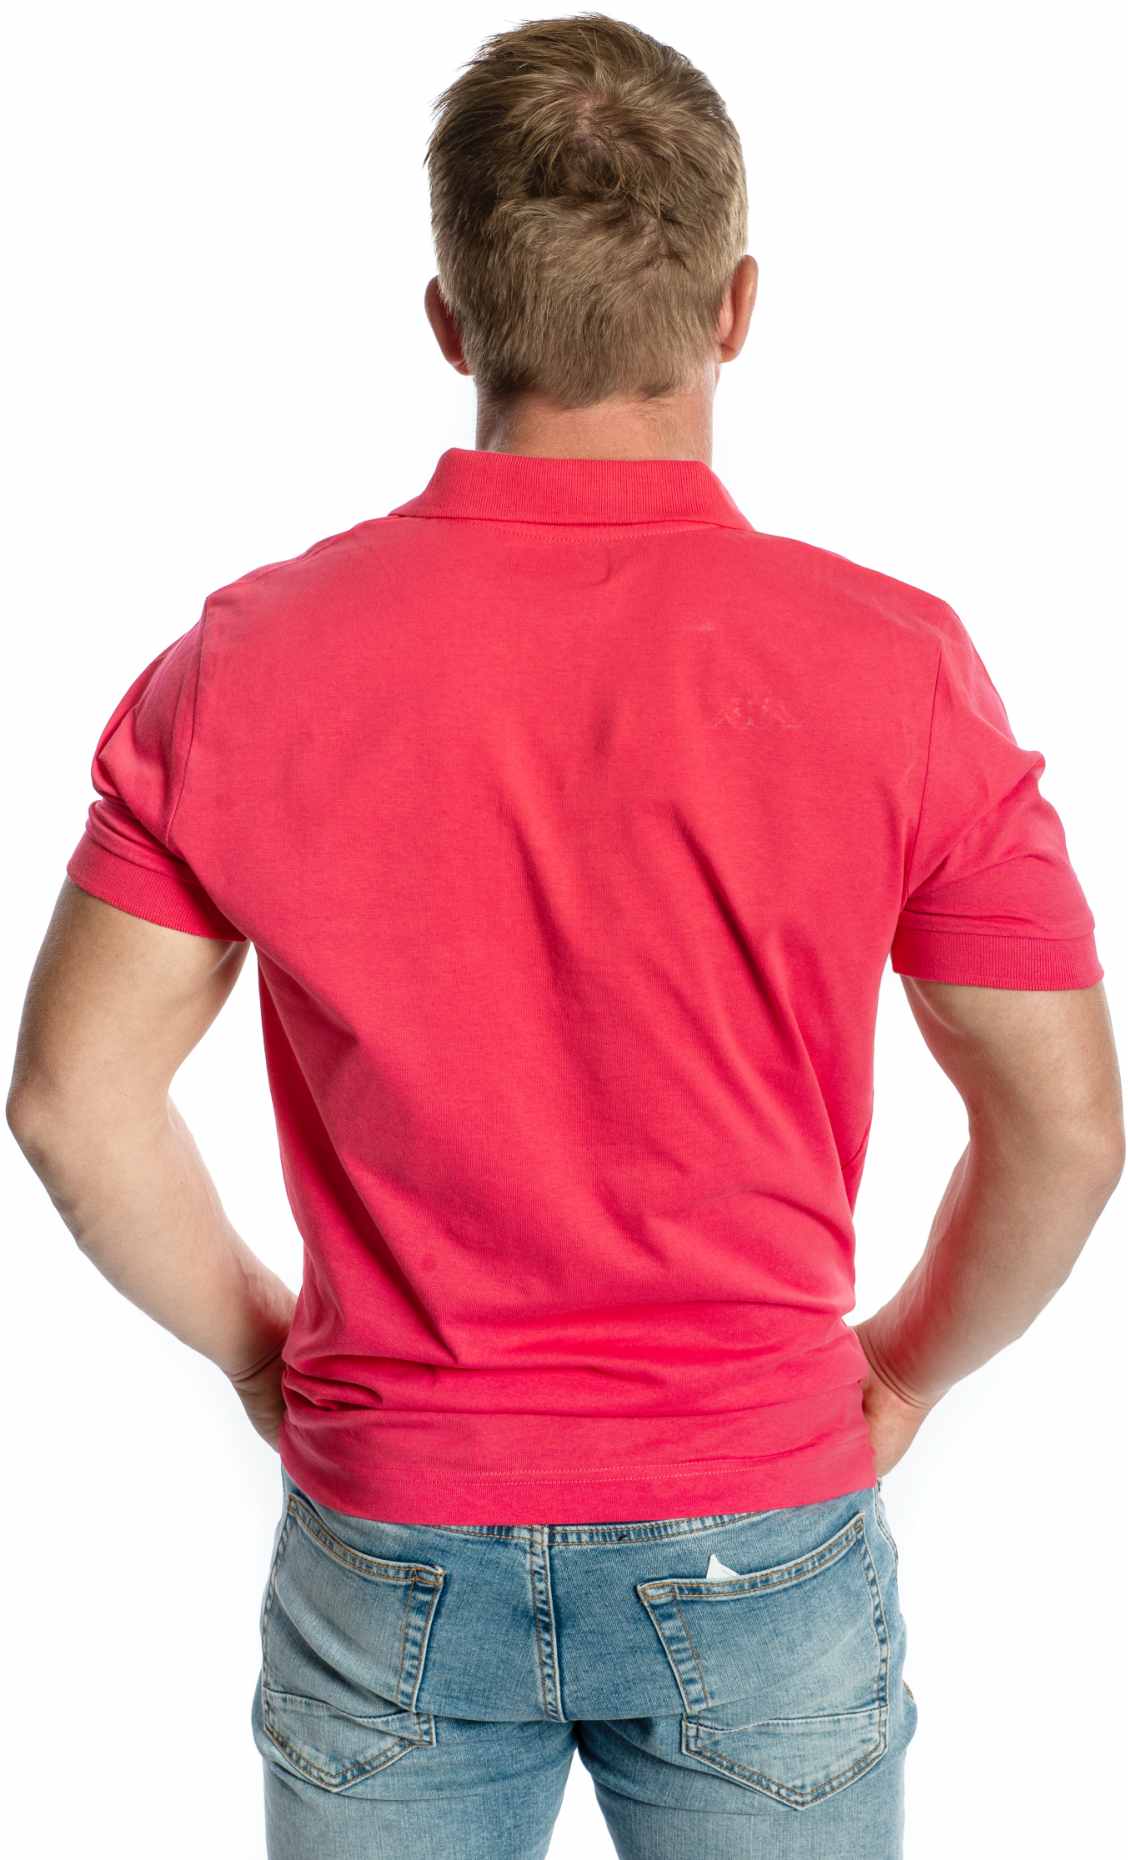 Men's polo shirt